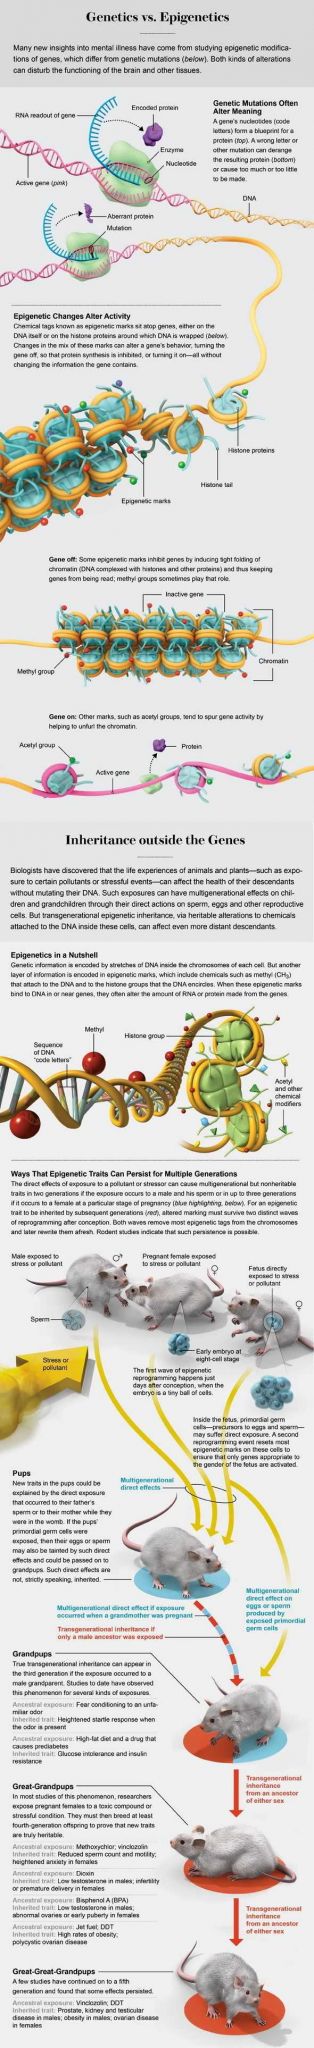 Harry Potter Genetics Worksheet together with 525 Best Genetics Images On Pinterest